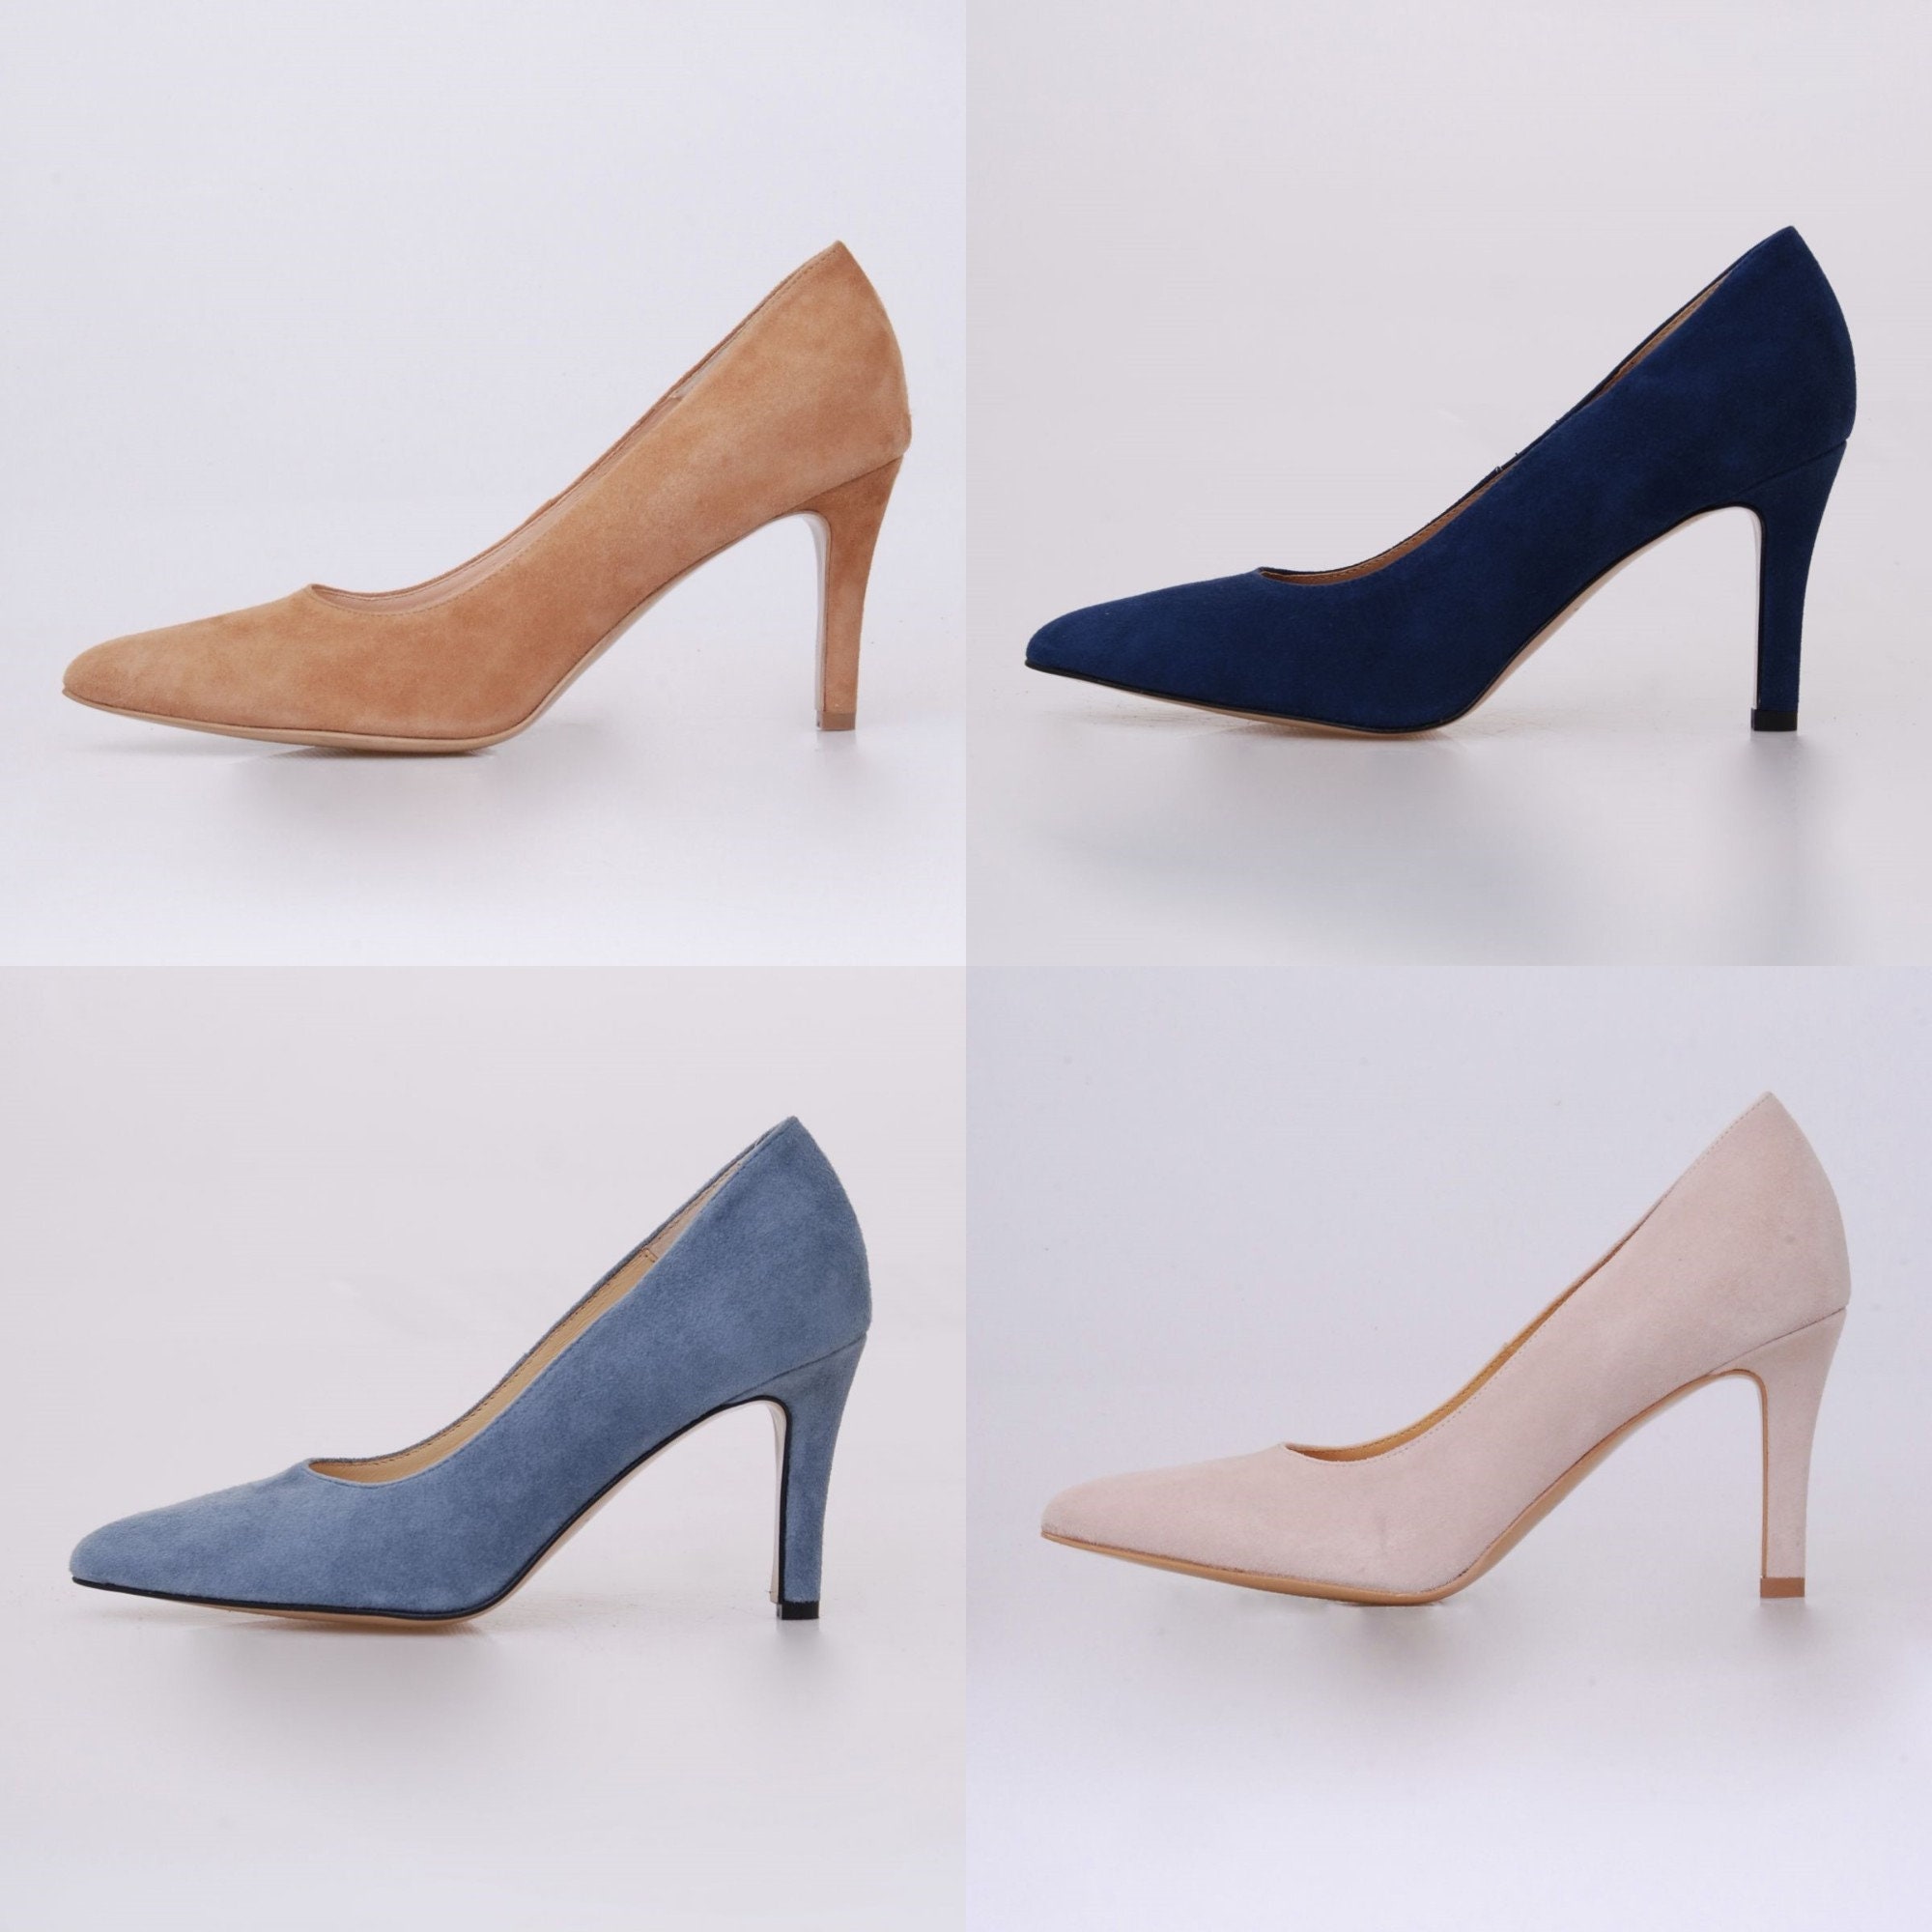 Mari leather heelsWomen shoesLeather shoesWedding | Etsy